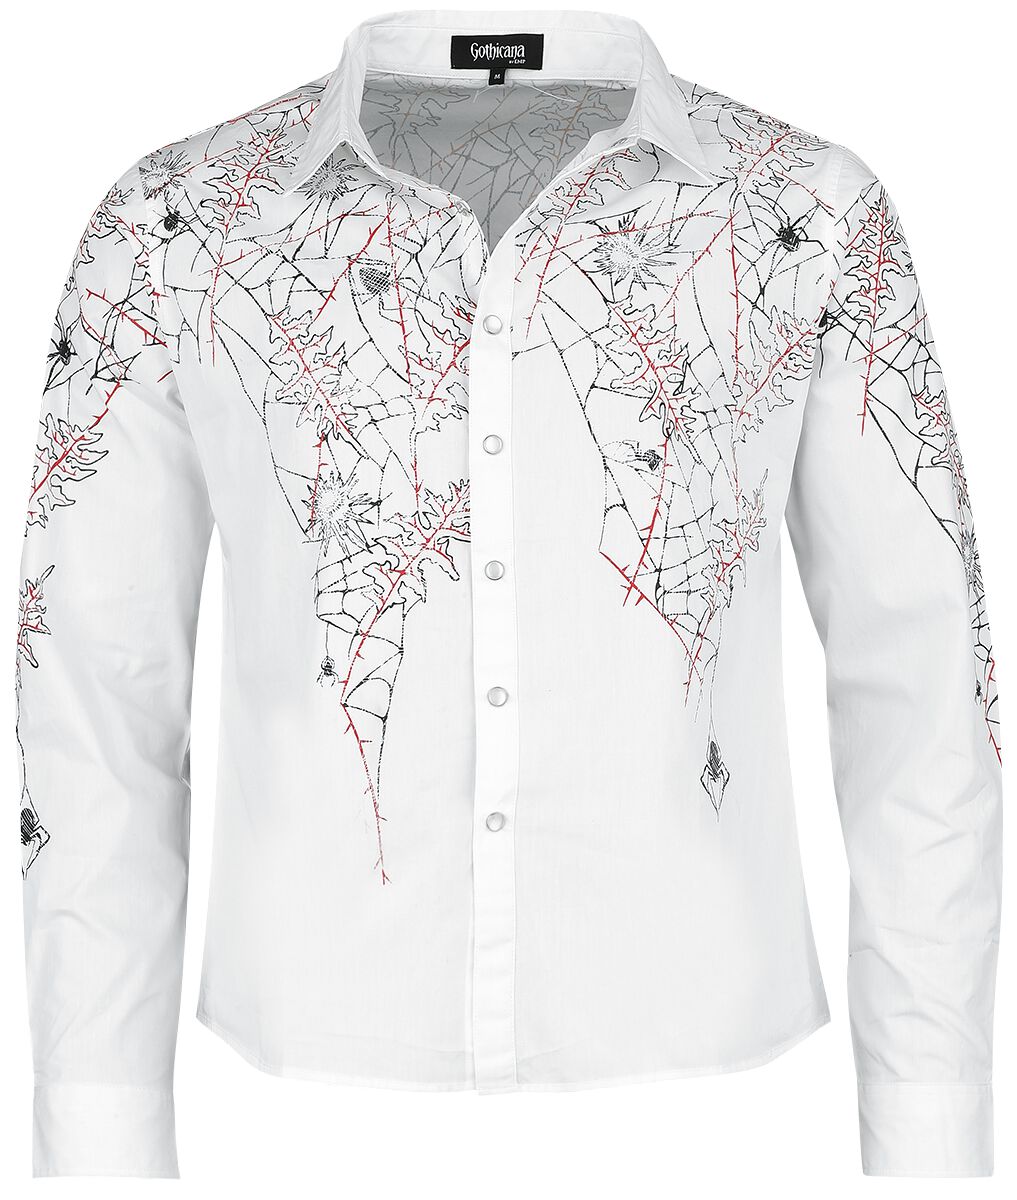 Gothicana by EMP - Gothic Langarmhemd - Shirt with Spiderweb Print - S bis XXL - für Männer - Größe S - weiß